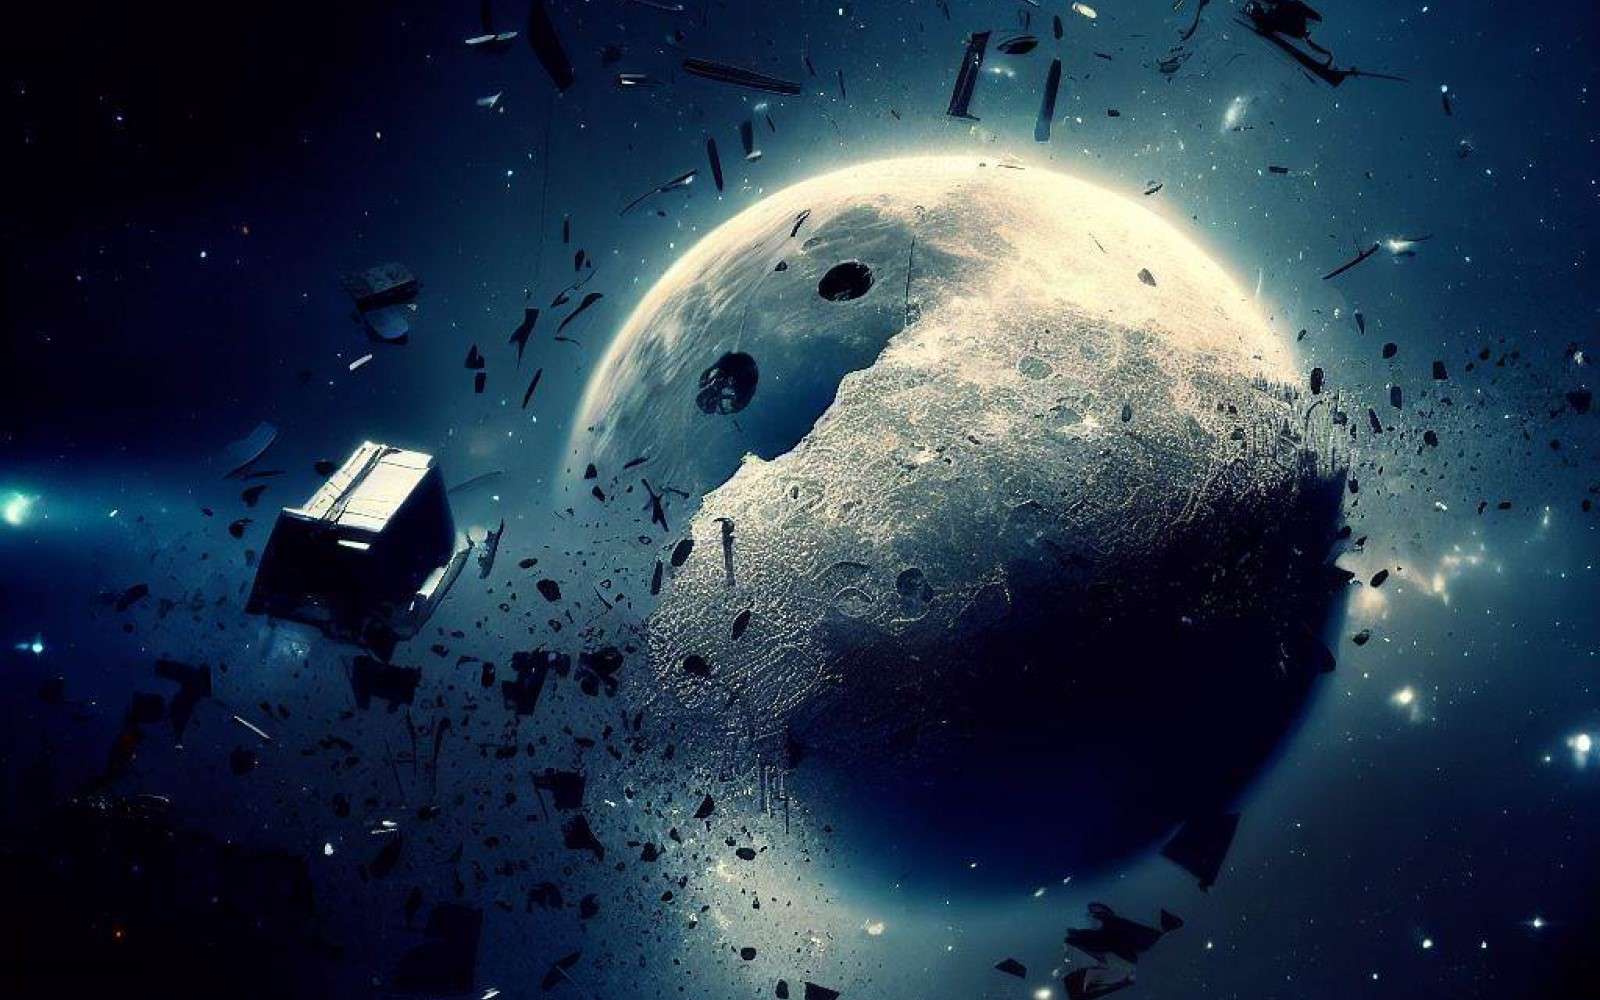 1 000 objets autour de la Lune en 2030 : ce scénario fou est-il possible ?